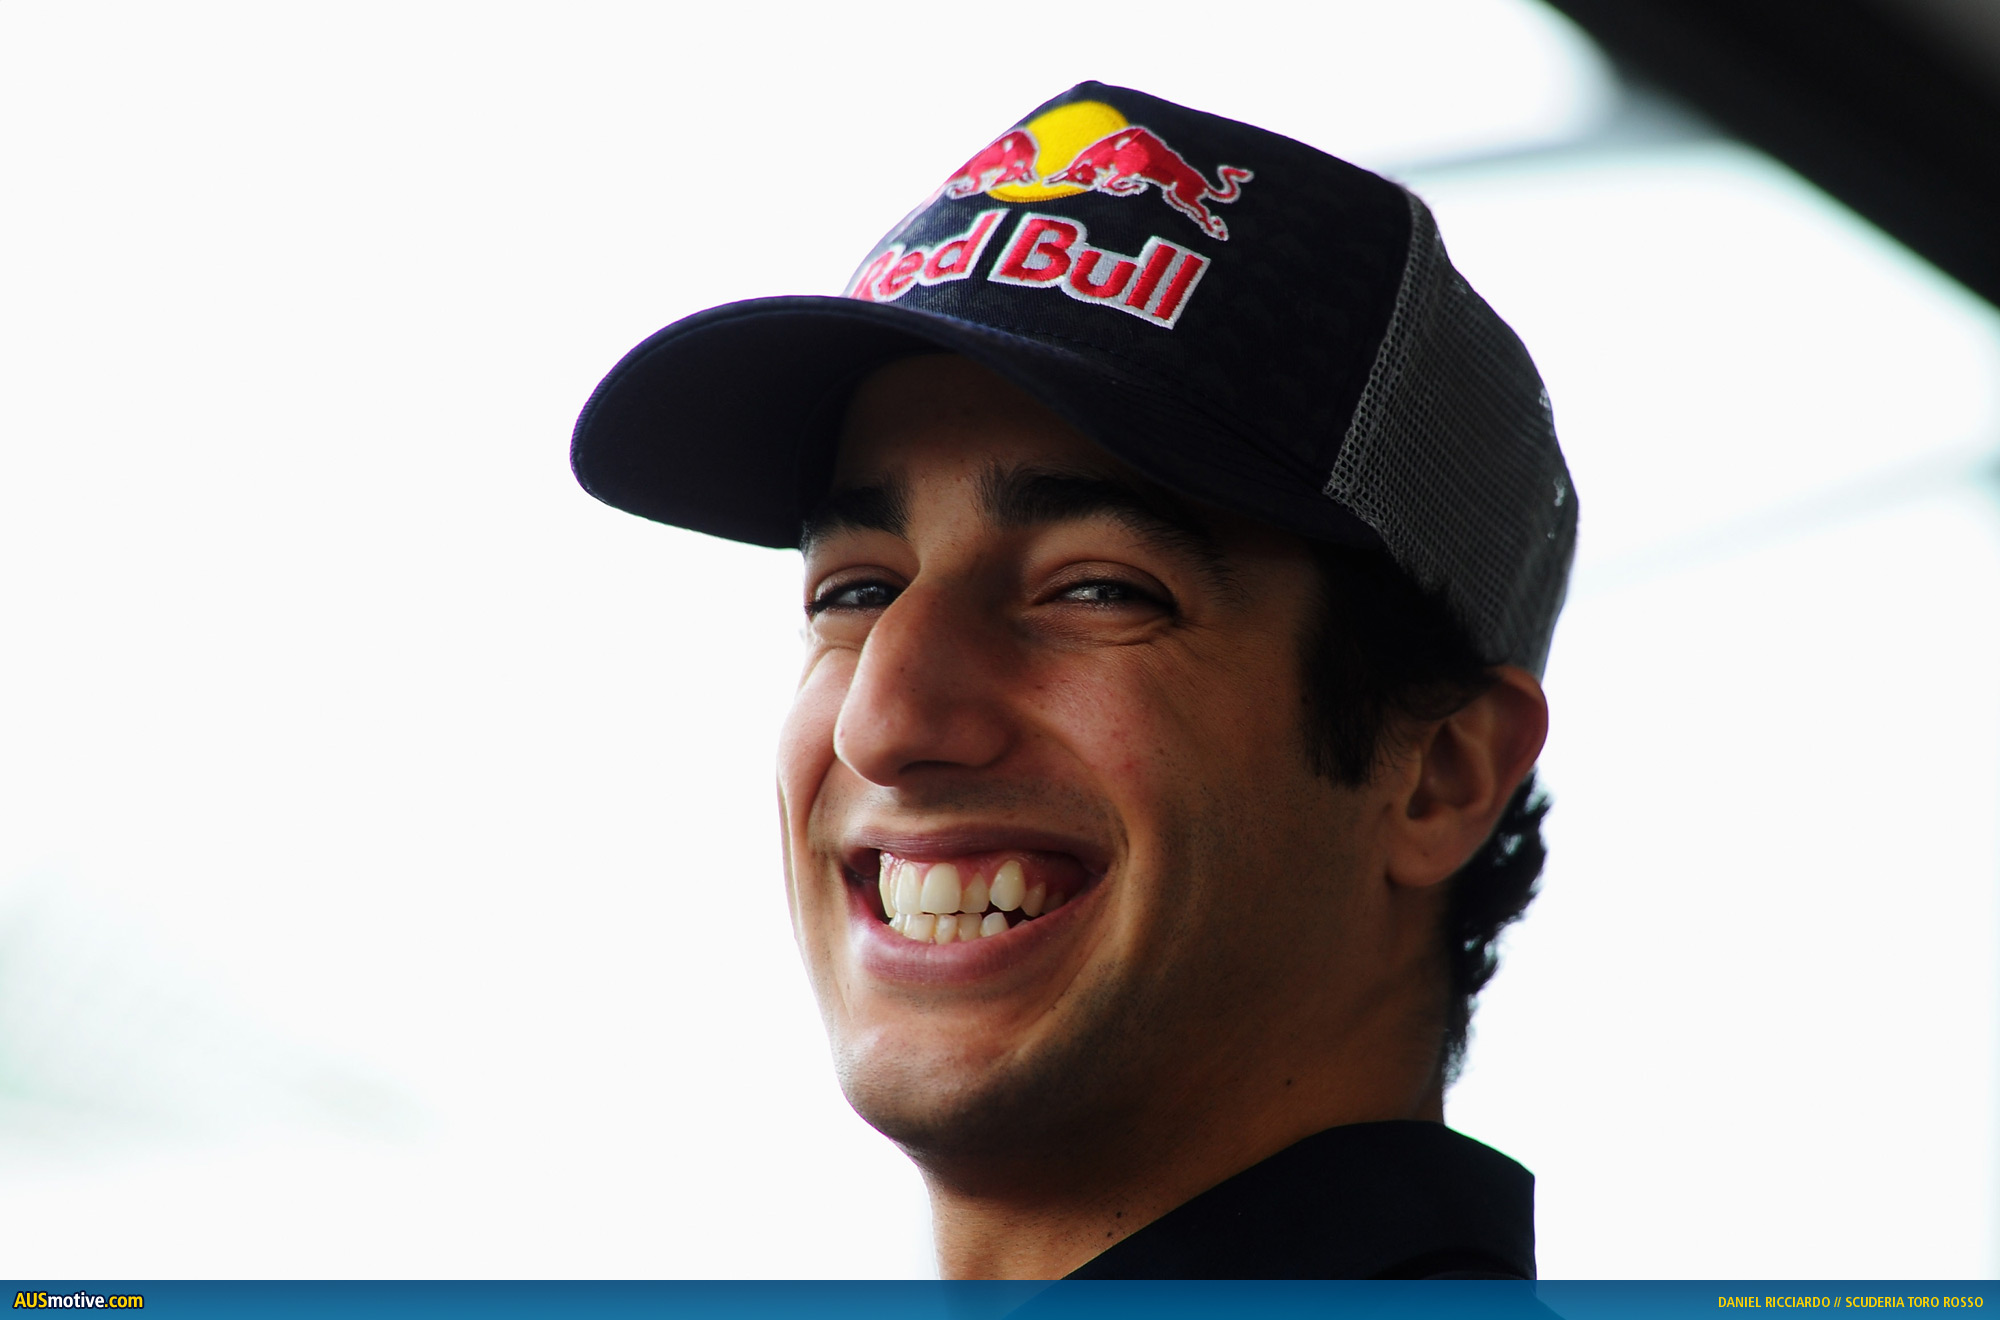 AUSmotive.com » Daniel Ricciardo Q&A interview